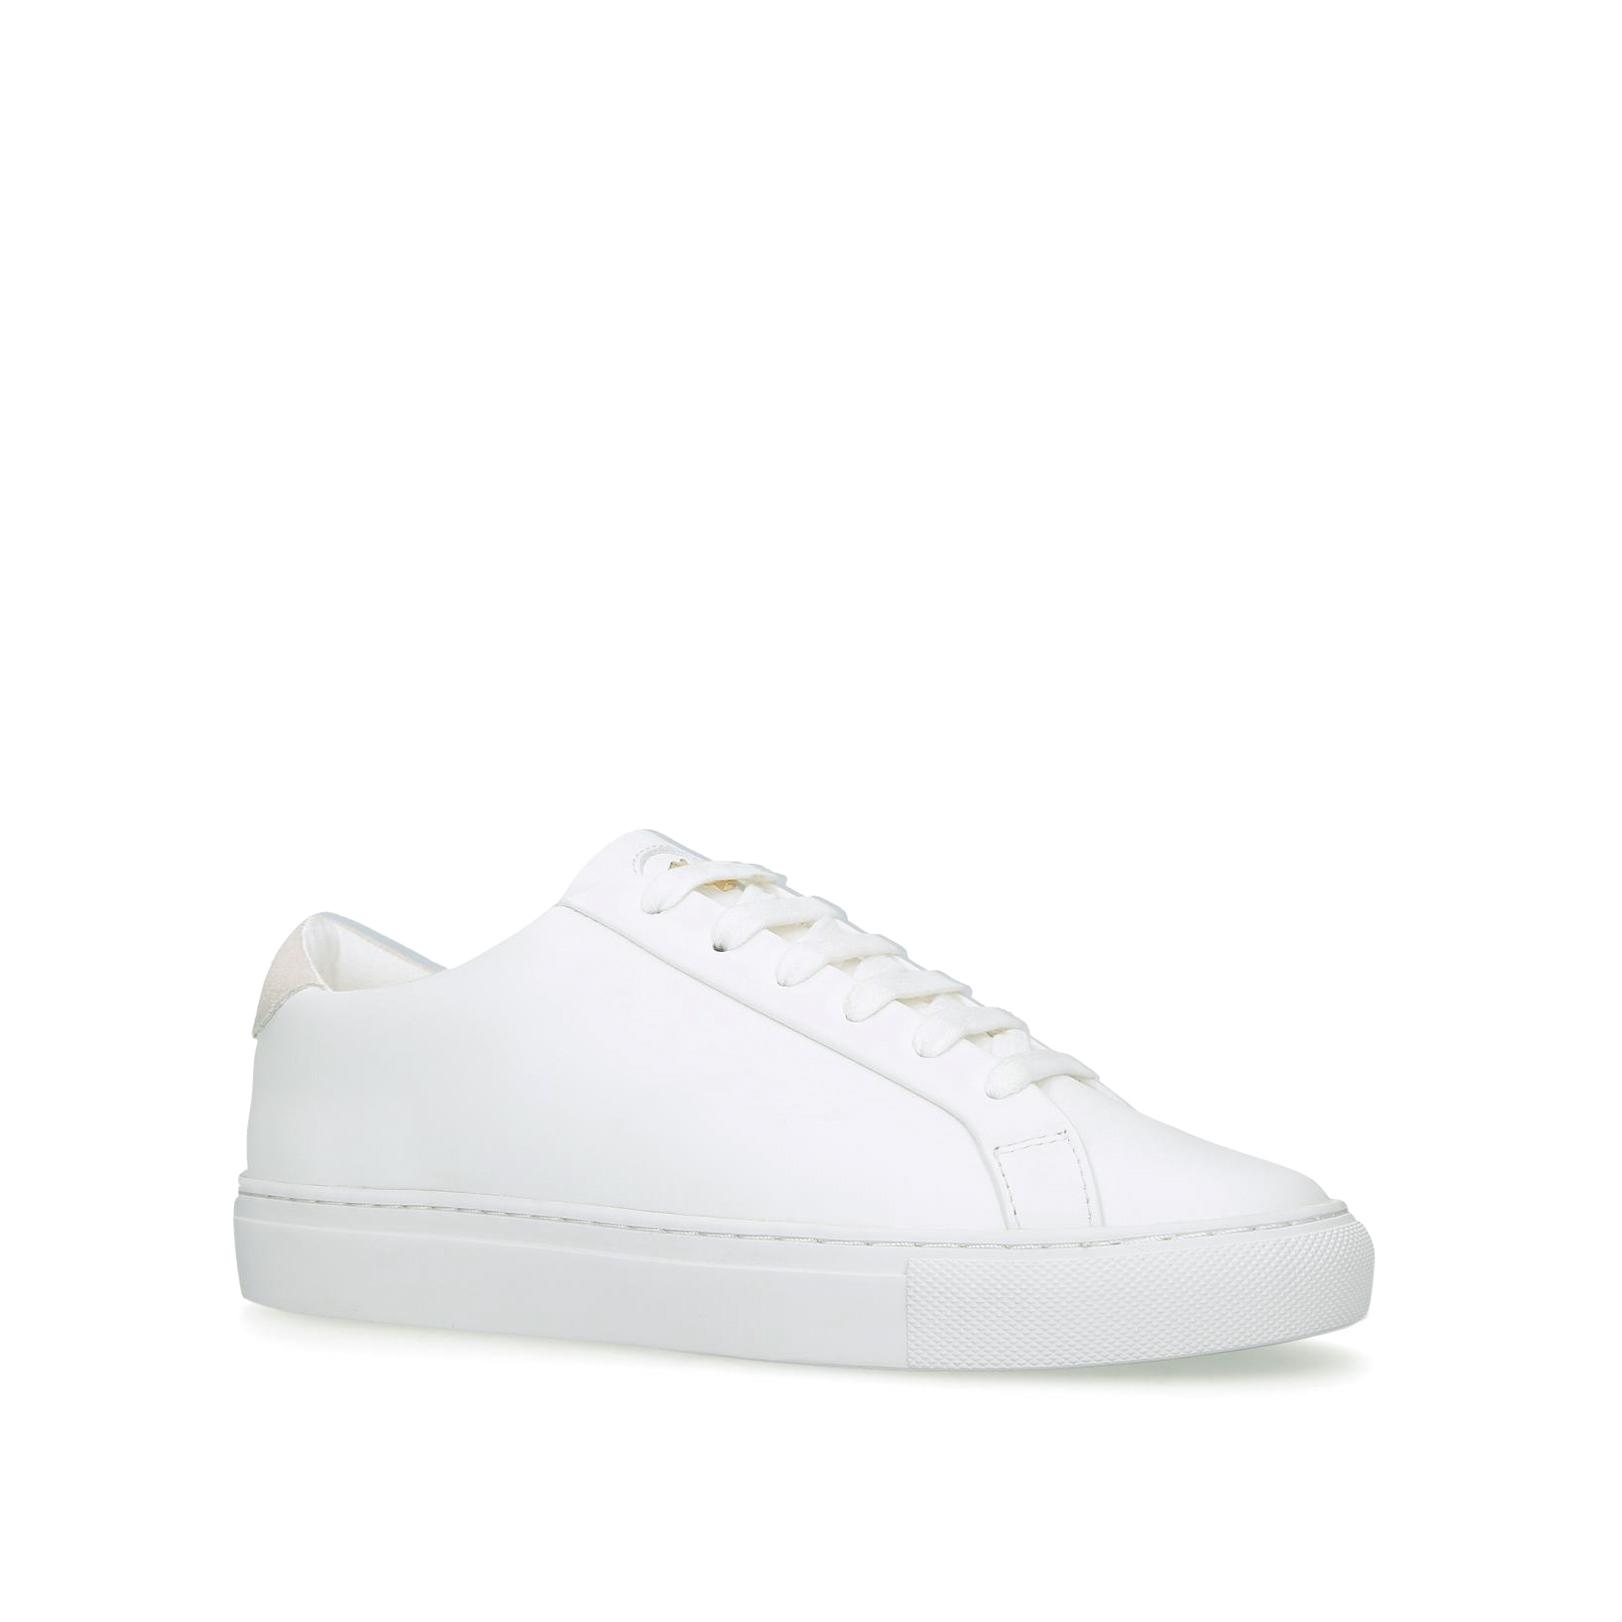 LANE KGL White Low Top Sneakers by KURT GEIGER LONDON